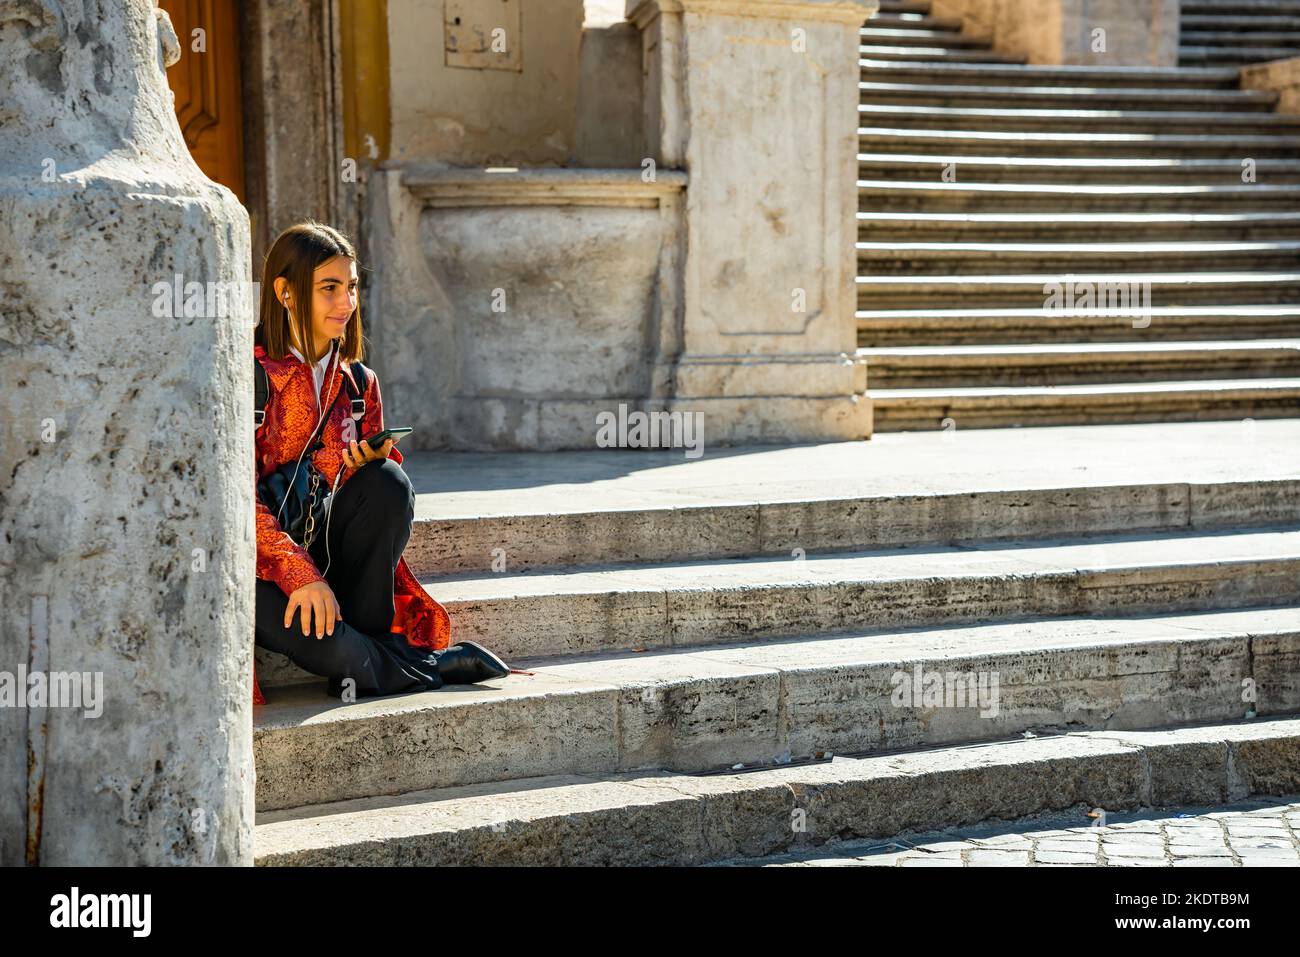 Jeune femme adulte assise seule sur les marches espagnoles à Rome, en Italie, portant un dessus rouge et des bottes de cow-boy Banque D'Images